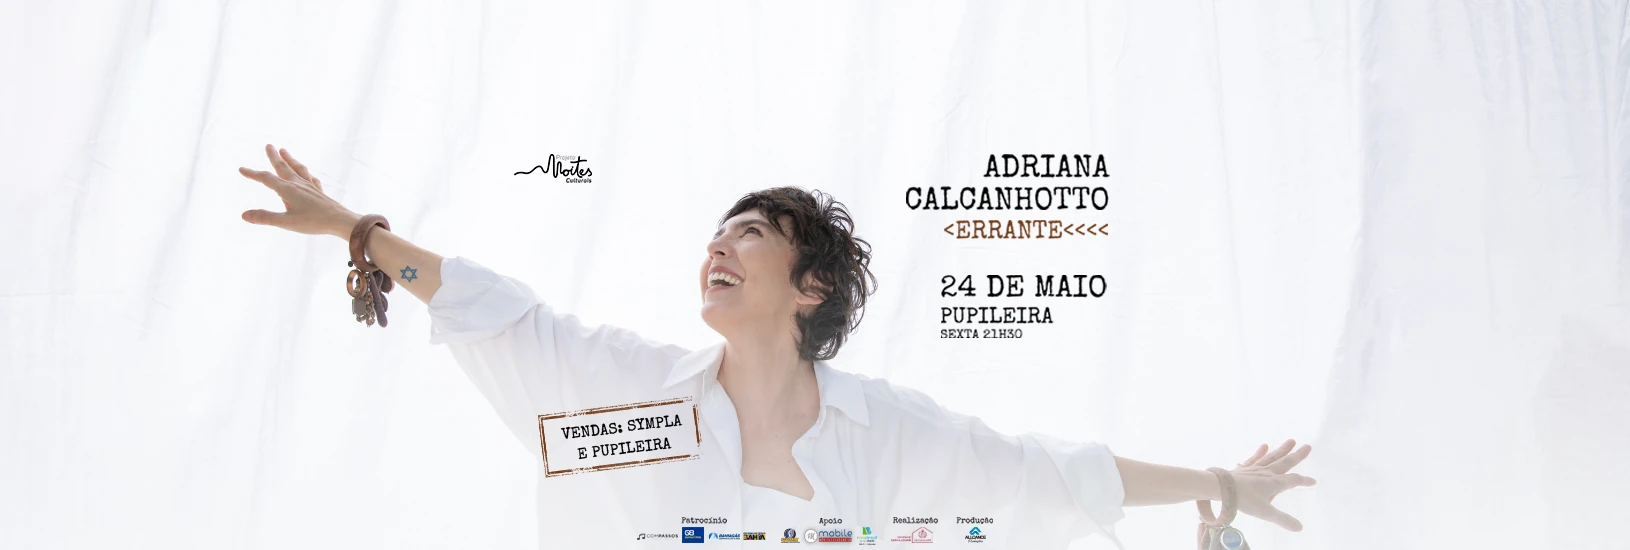 Show Adriana Calcanhoto